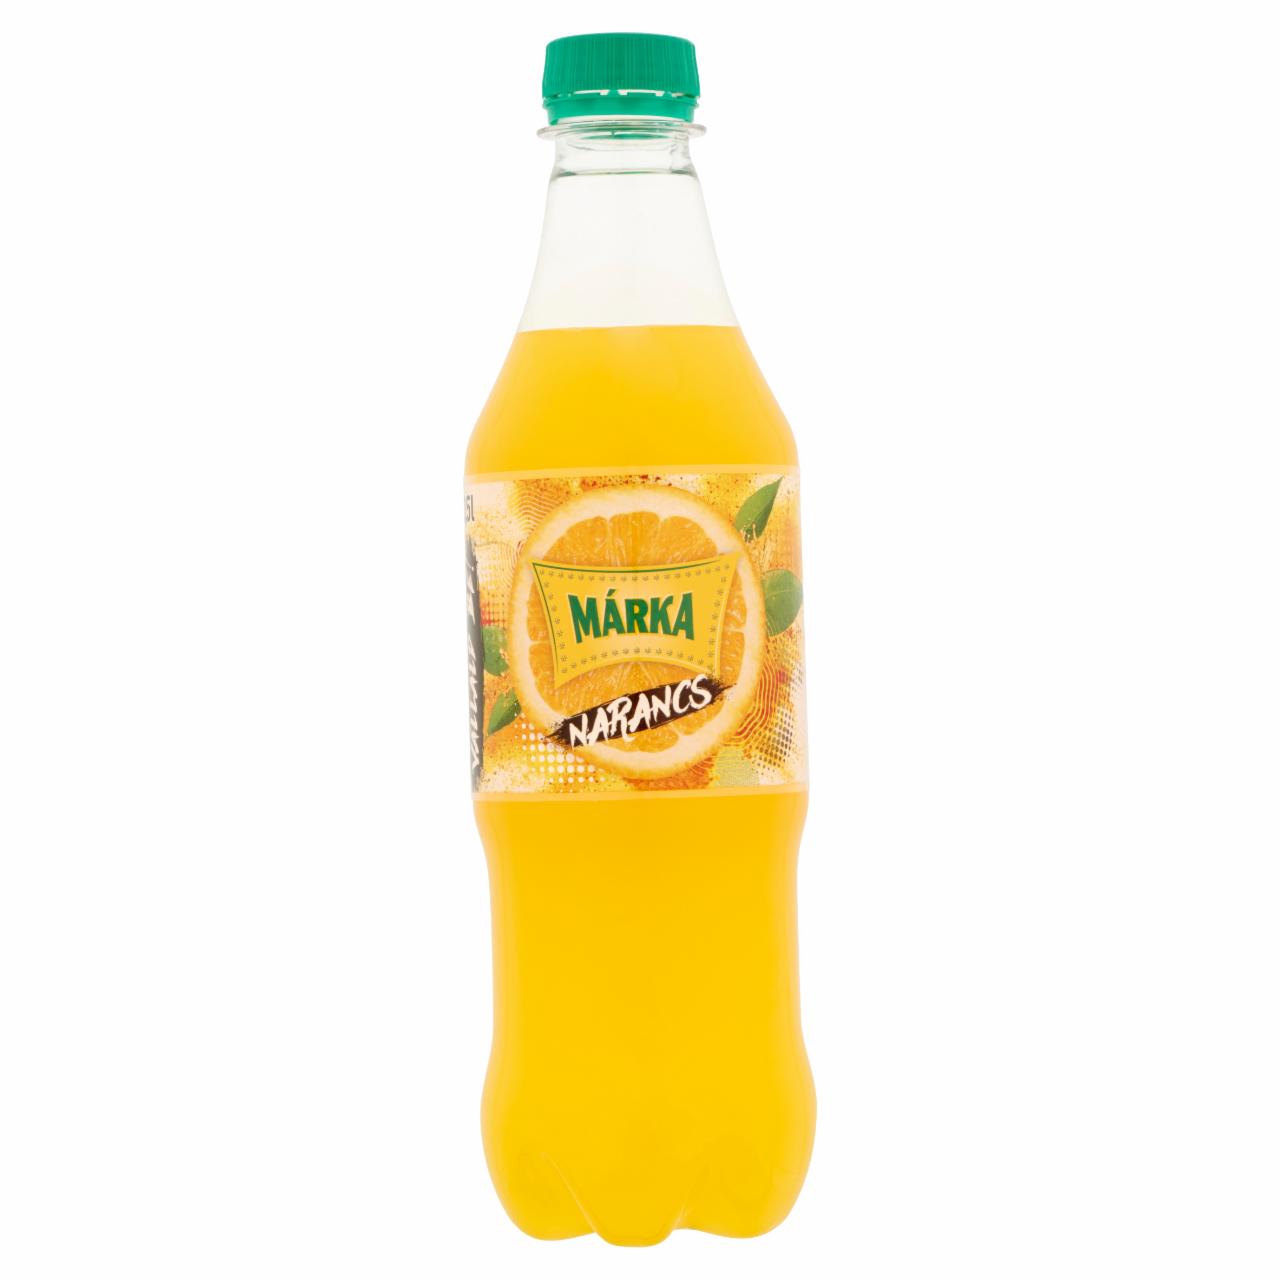 Képek - Márka narancs szénsavas üdítőital cukorral és édesítőszerekkel 0,5 l